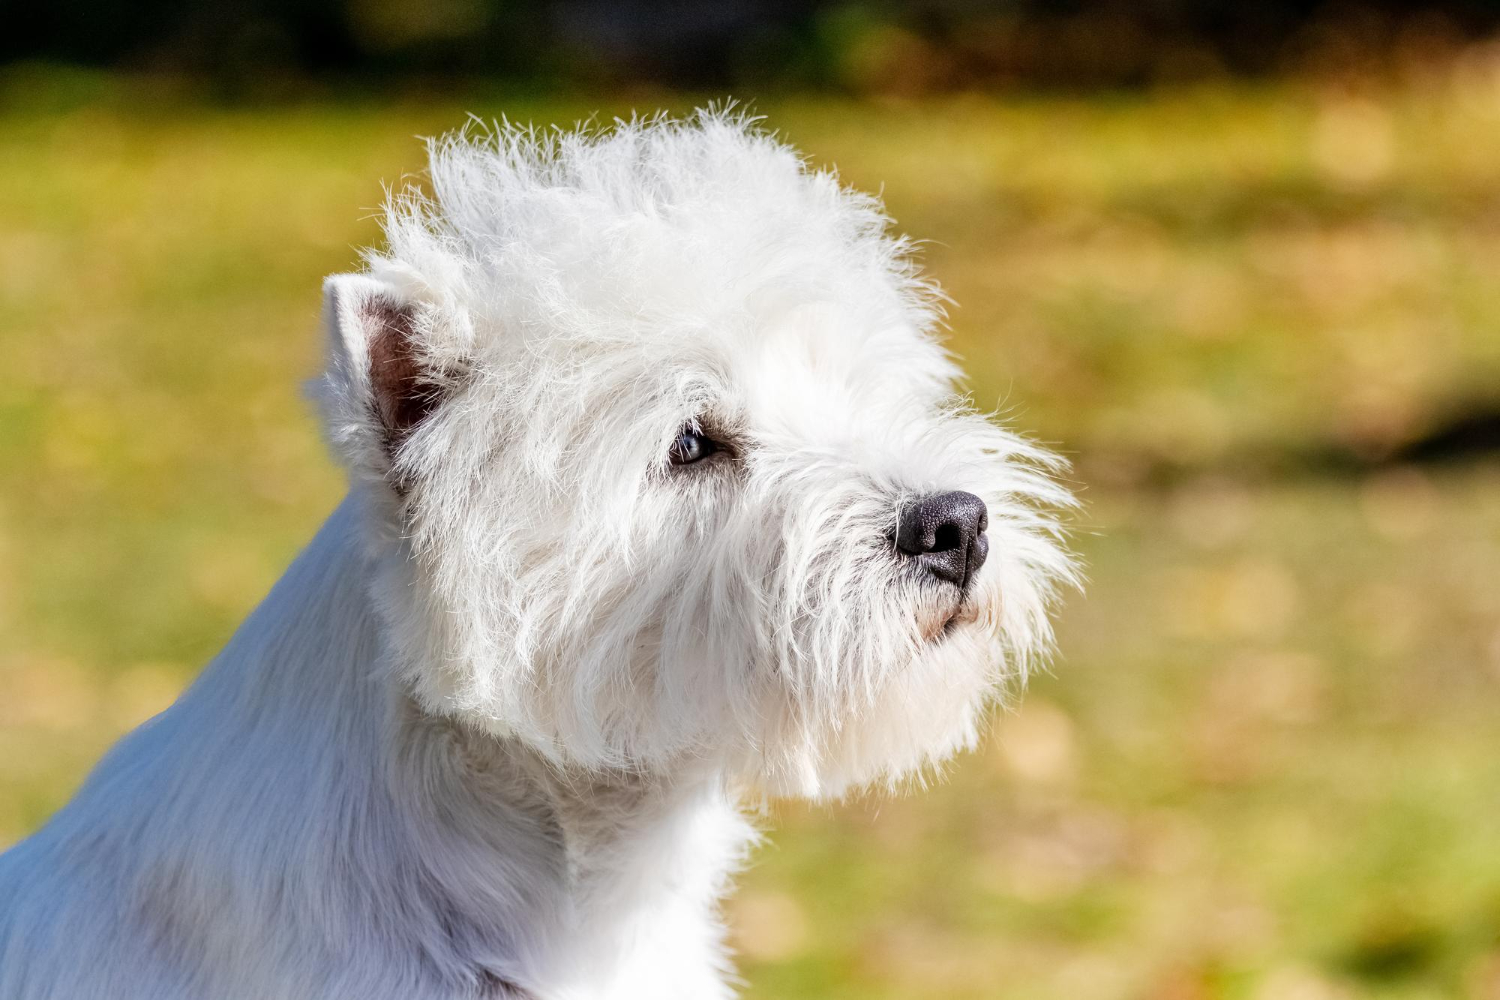 West highland white terrier - pielęgnacja sierści.